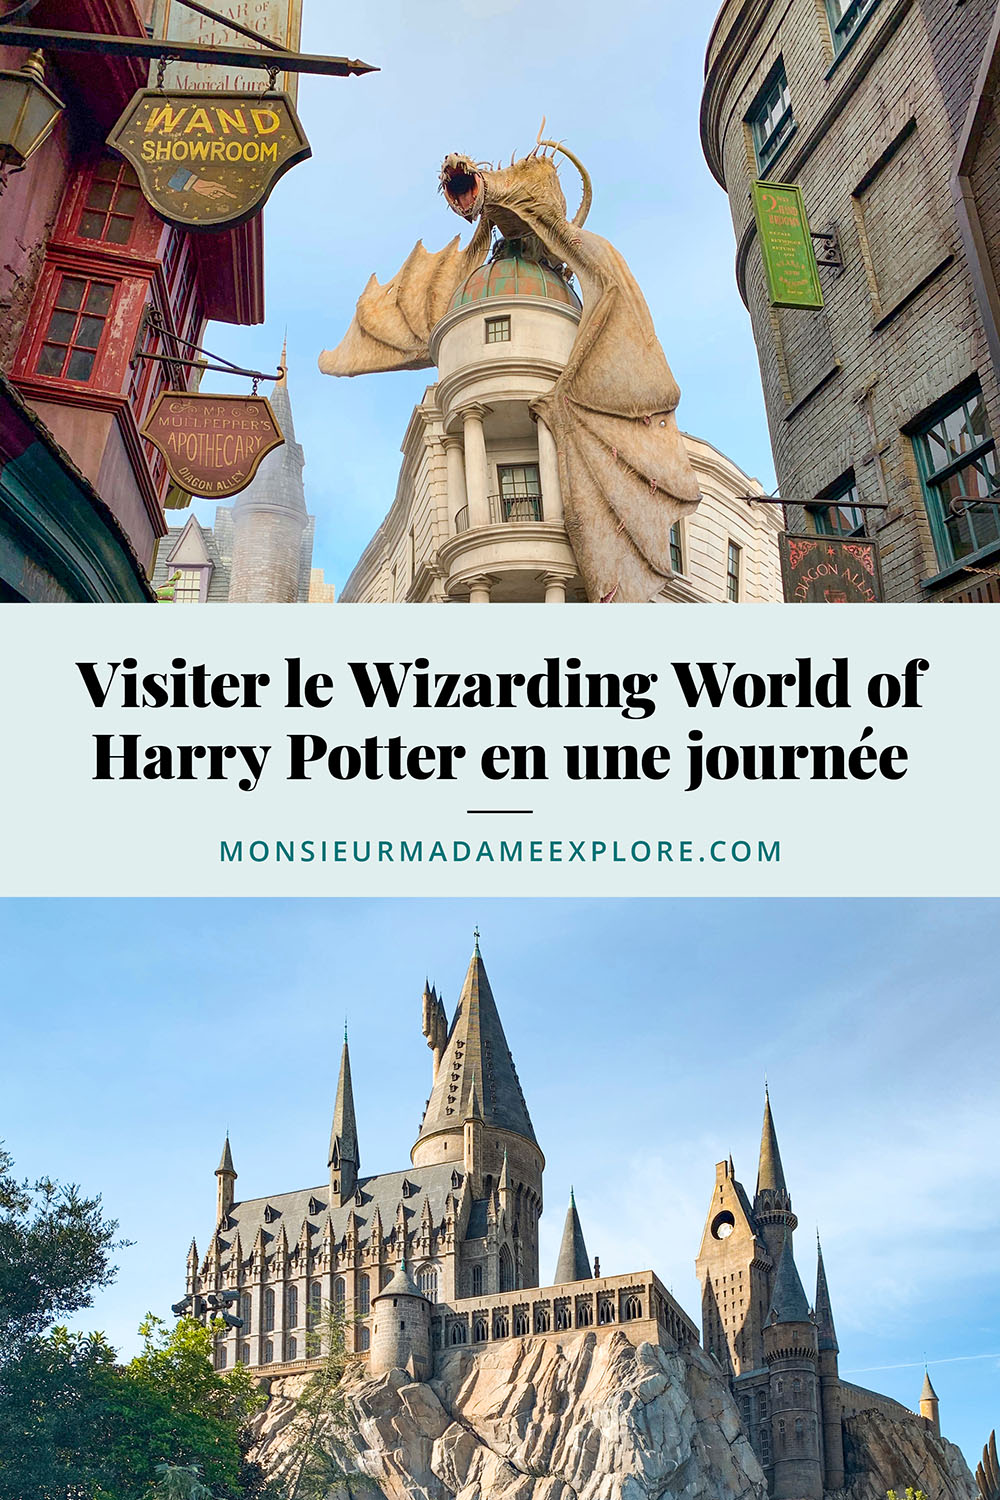 Visiter le Wizarding World of Harry Potter en une journée, Universal Orlando Resort, Monsieur+Madame Explore, Blogue de voyage, Floride, États-Unis / How to visit the Wizarding World of Harry Potter in one day, Universal Orlando Resort, Florida, USA